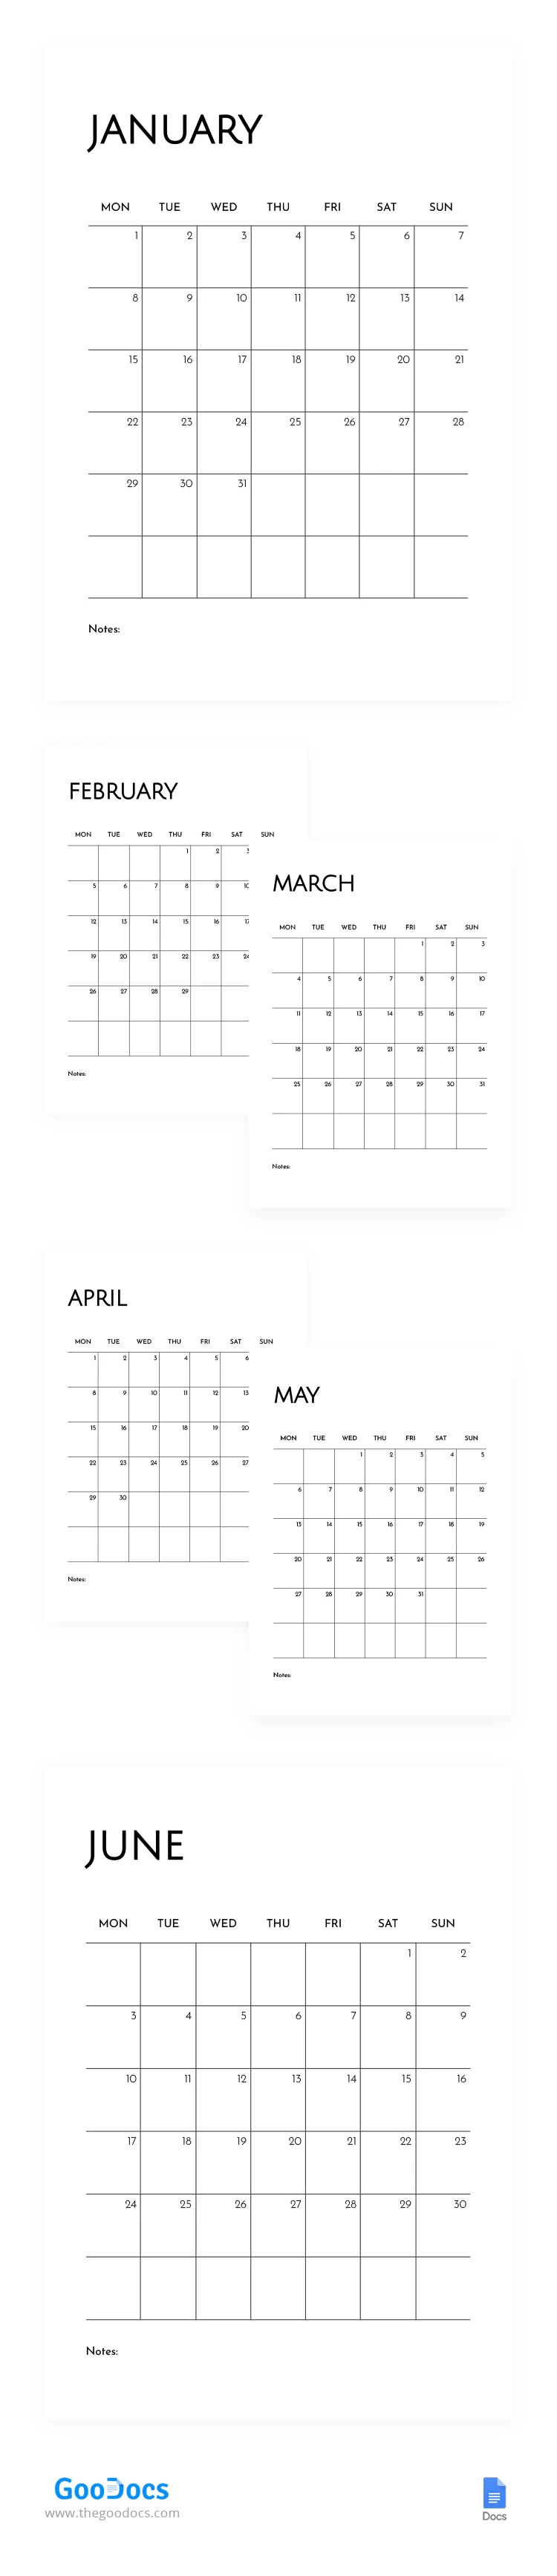 Calendário Mensal Simples de 2024 - free Google Docs Template - 10068564